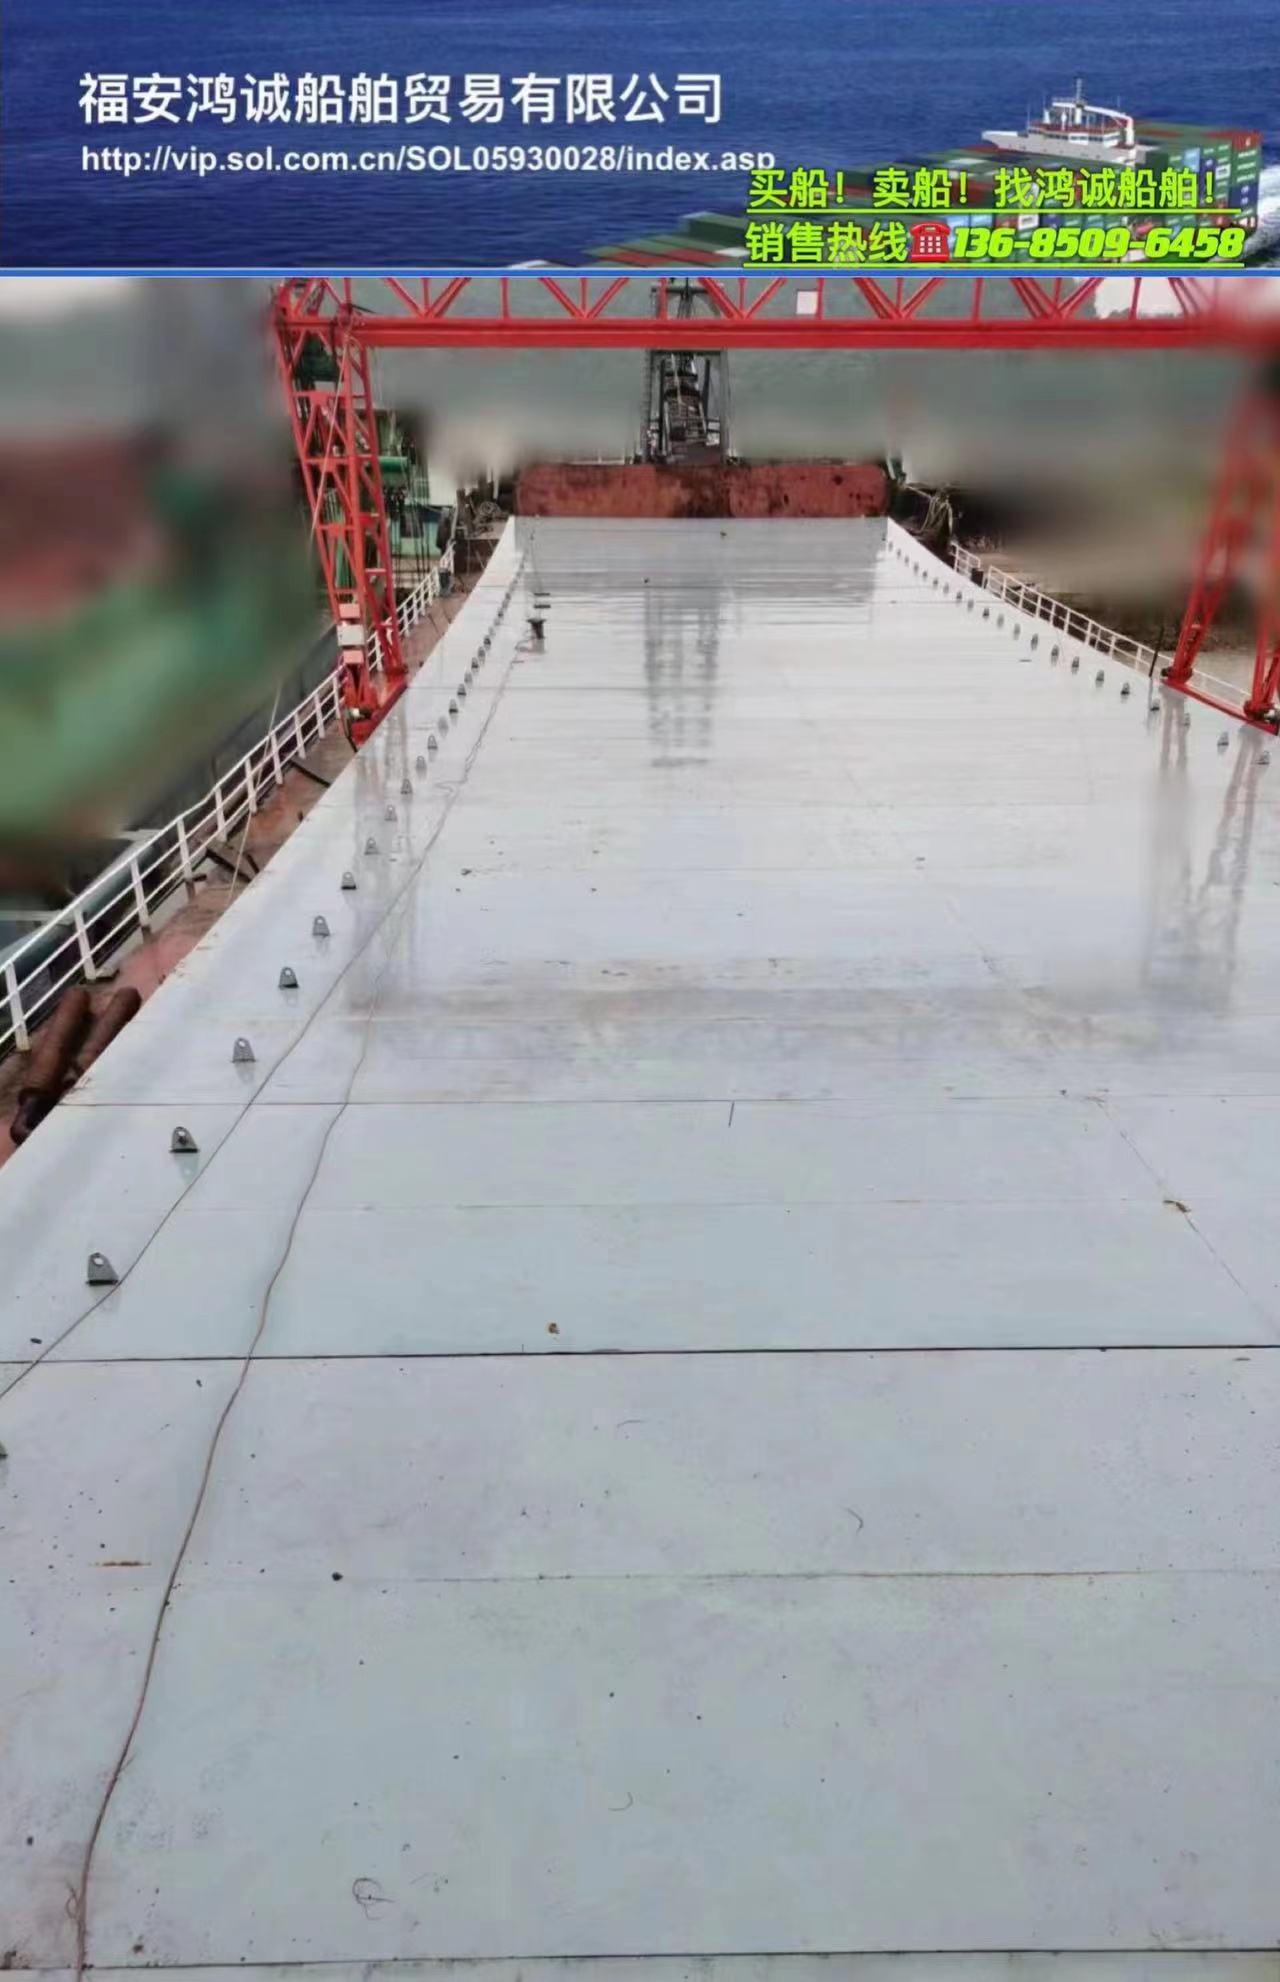 出售实载5500吨沿海自卸砂船： 2016年7月广东惠州建造/